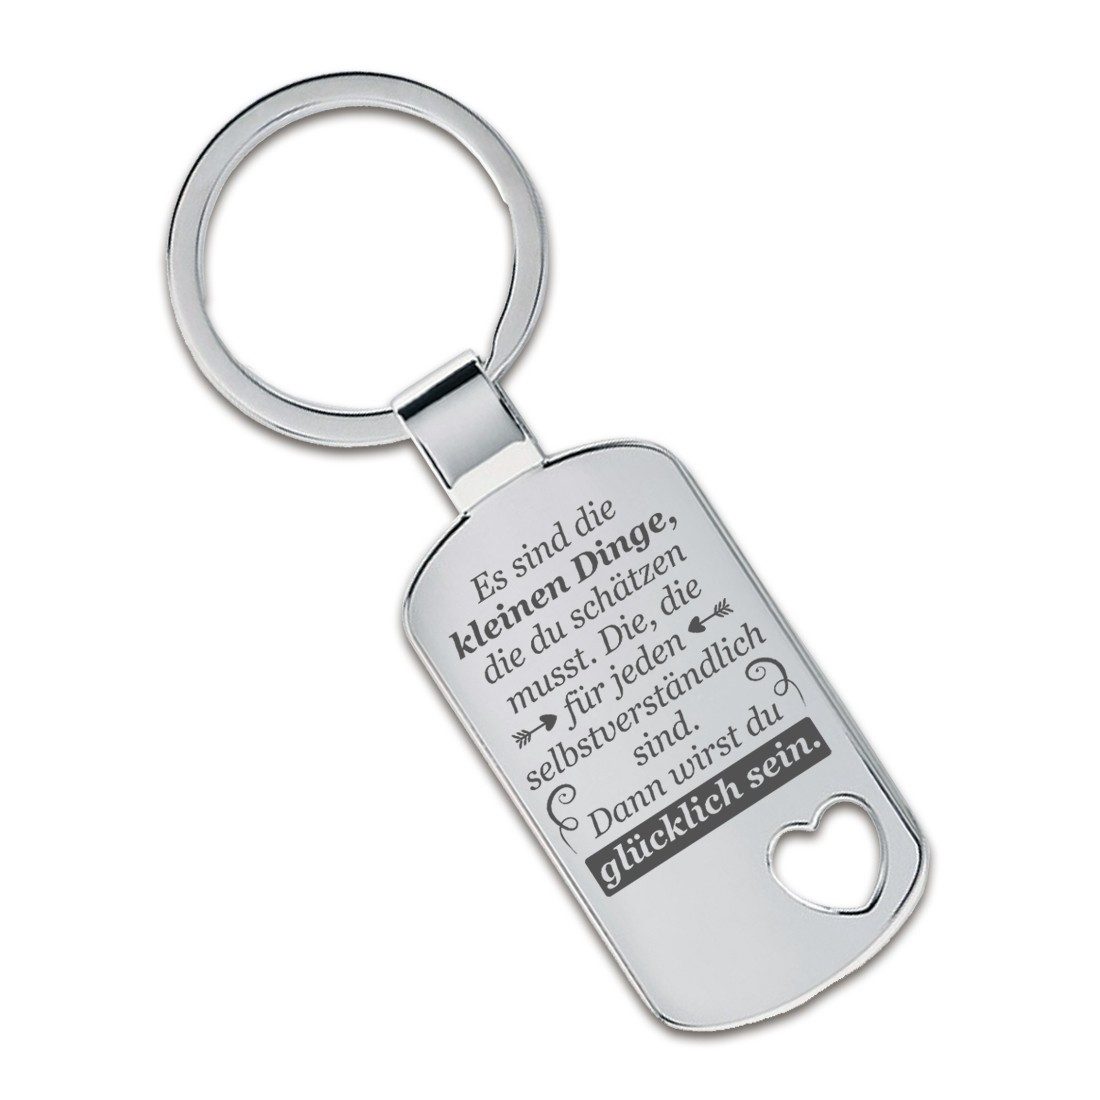 Lieblingsmensch Schlüsselanhänger Die kleinen Dinge - ein tolles Geschenk &Glücksbringer (Schlüsselanhänger mit Gravur, inklusive Schlüsselring), Robuste und filigrane Lasergravur